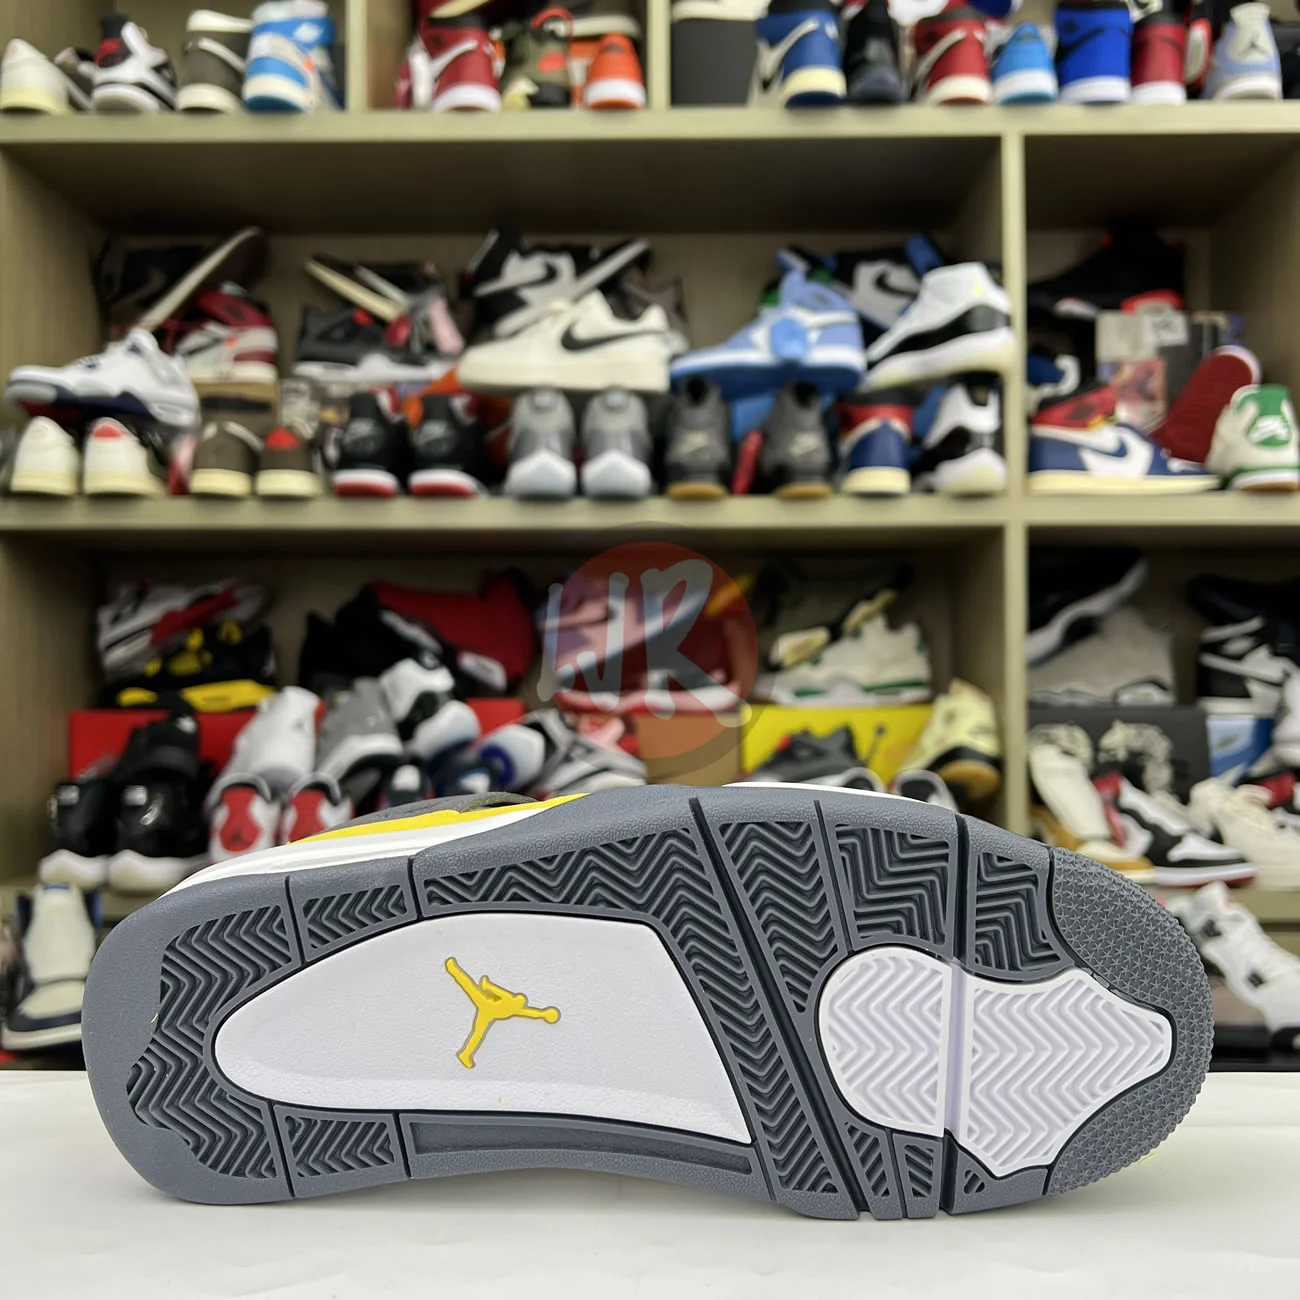 Air Jordan 4 Retro Lightning 2021 Ct8527 700 Ljr Sneakers (9) - bc-ljr.com